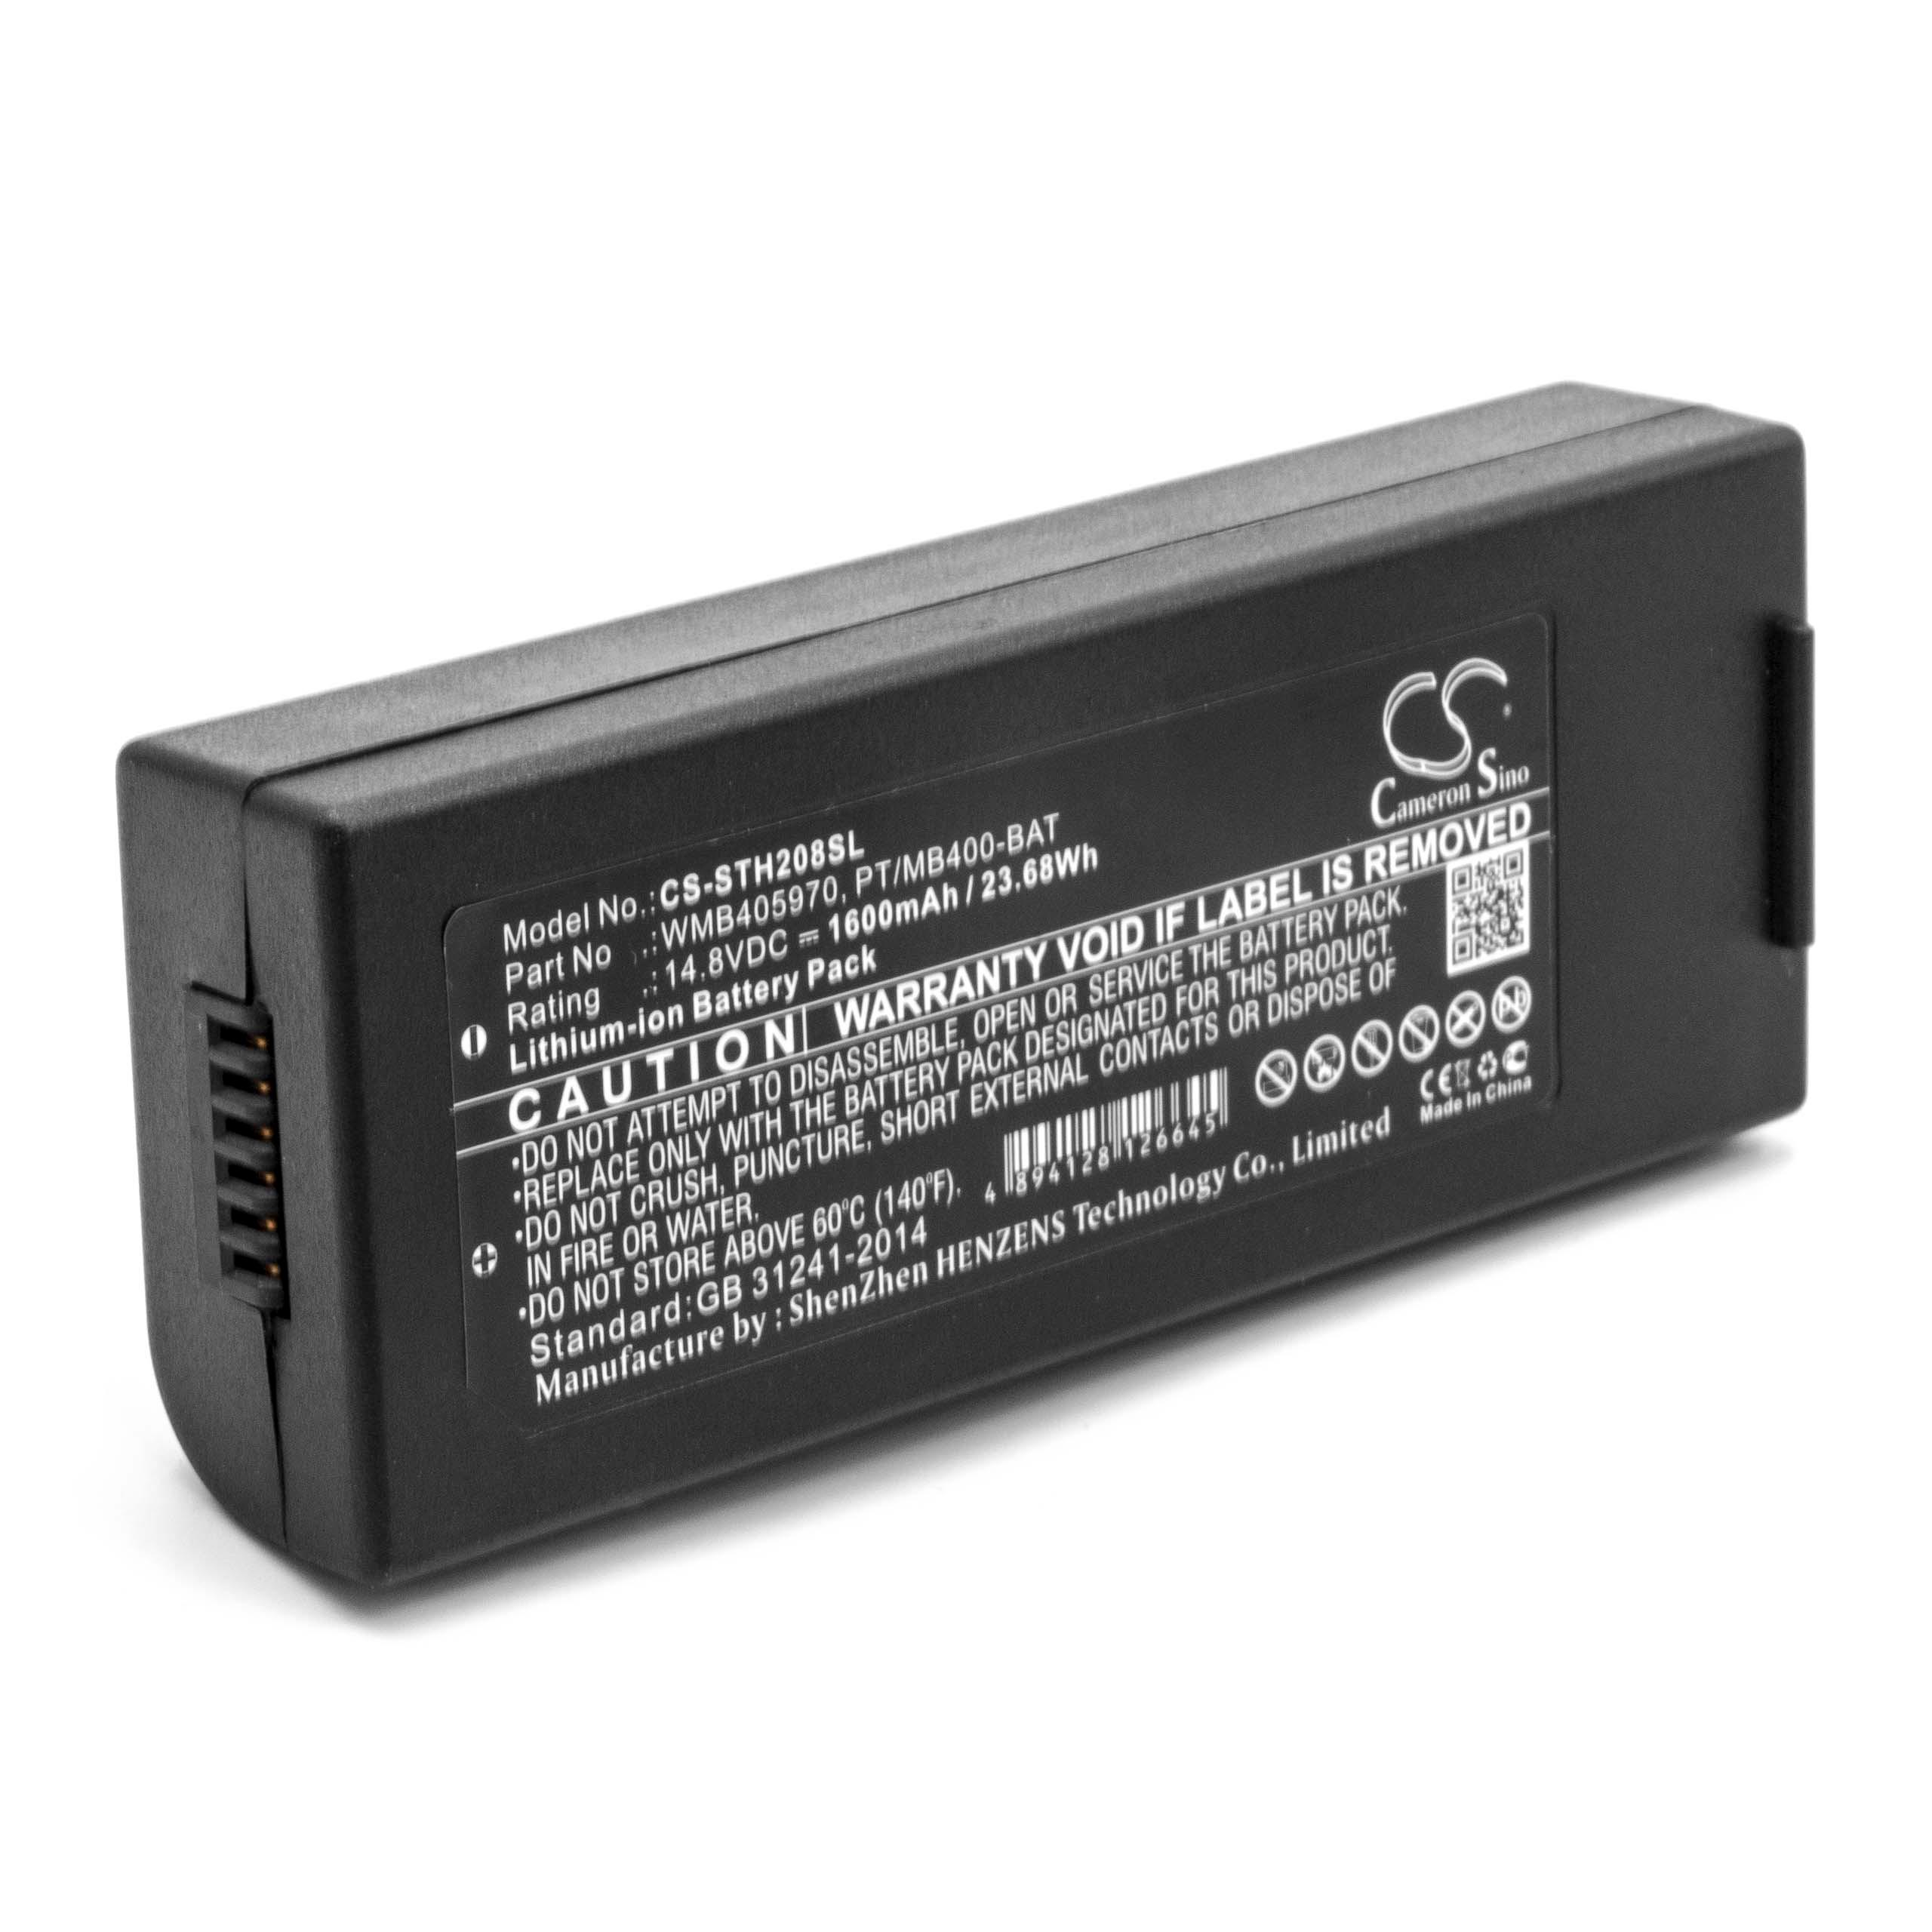 Akumulator do drukarki / drukarki etykiet zamiennik WMB405970, PT/MB400-BAT - 1600 mAh 14,8 V Li-Ion